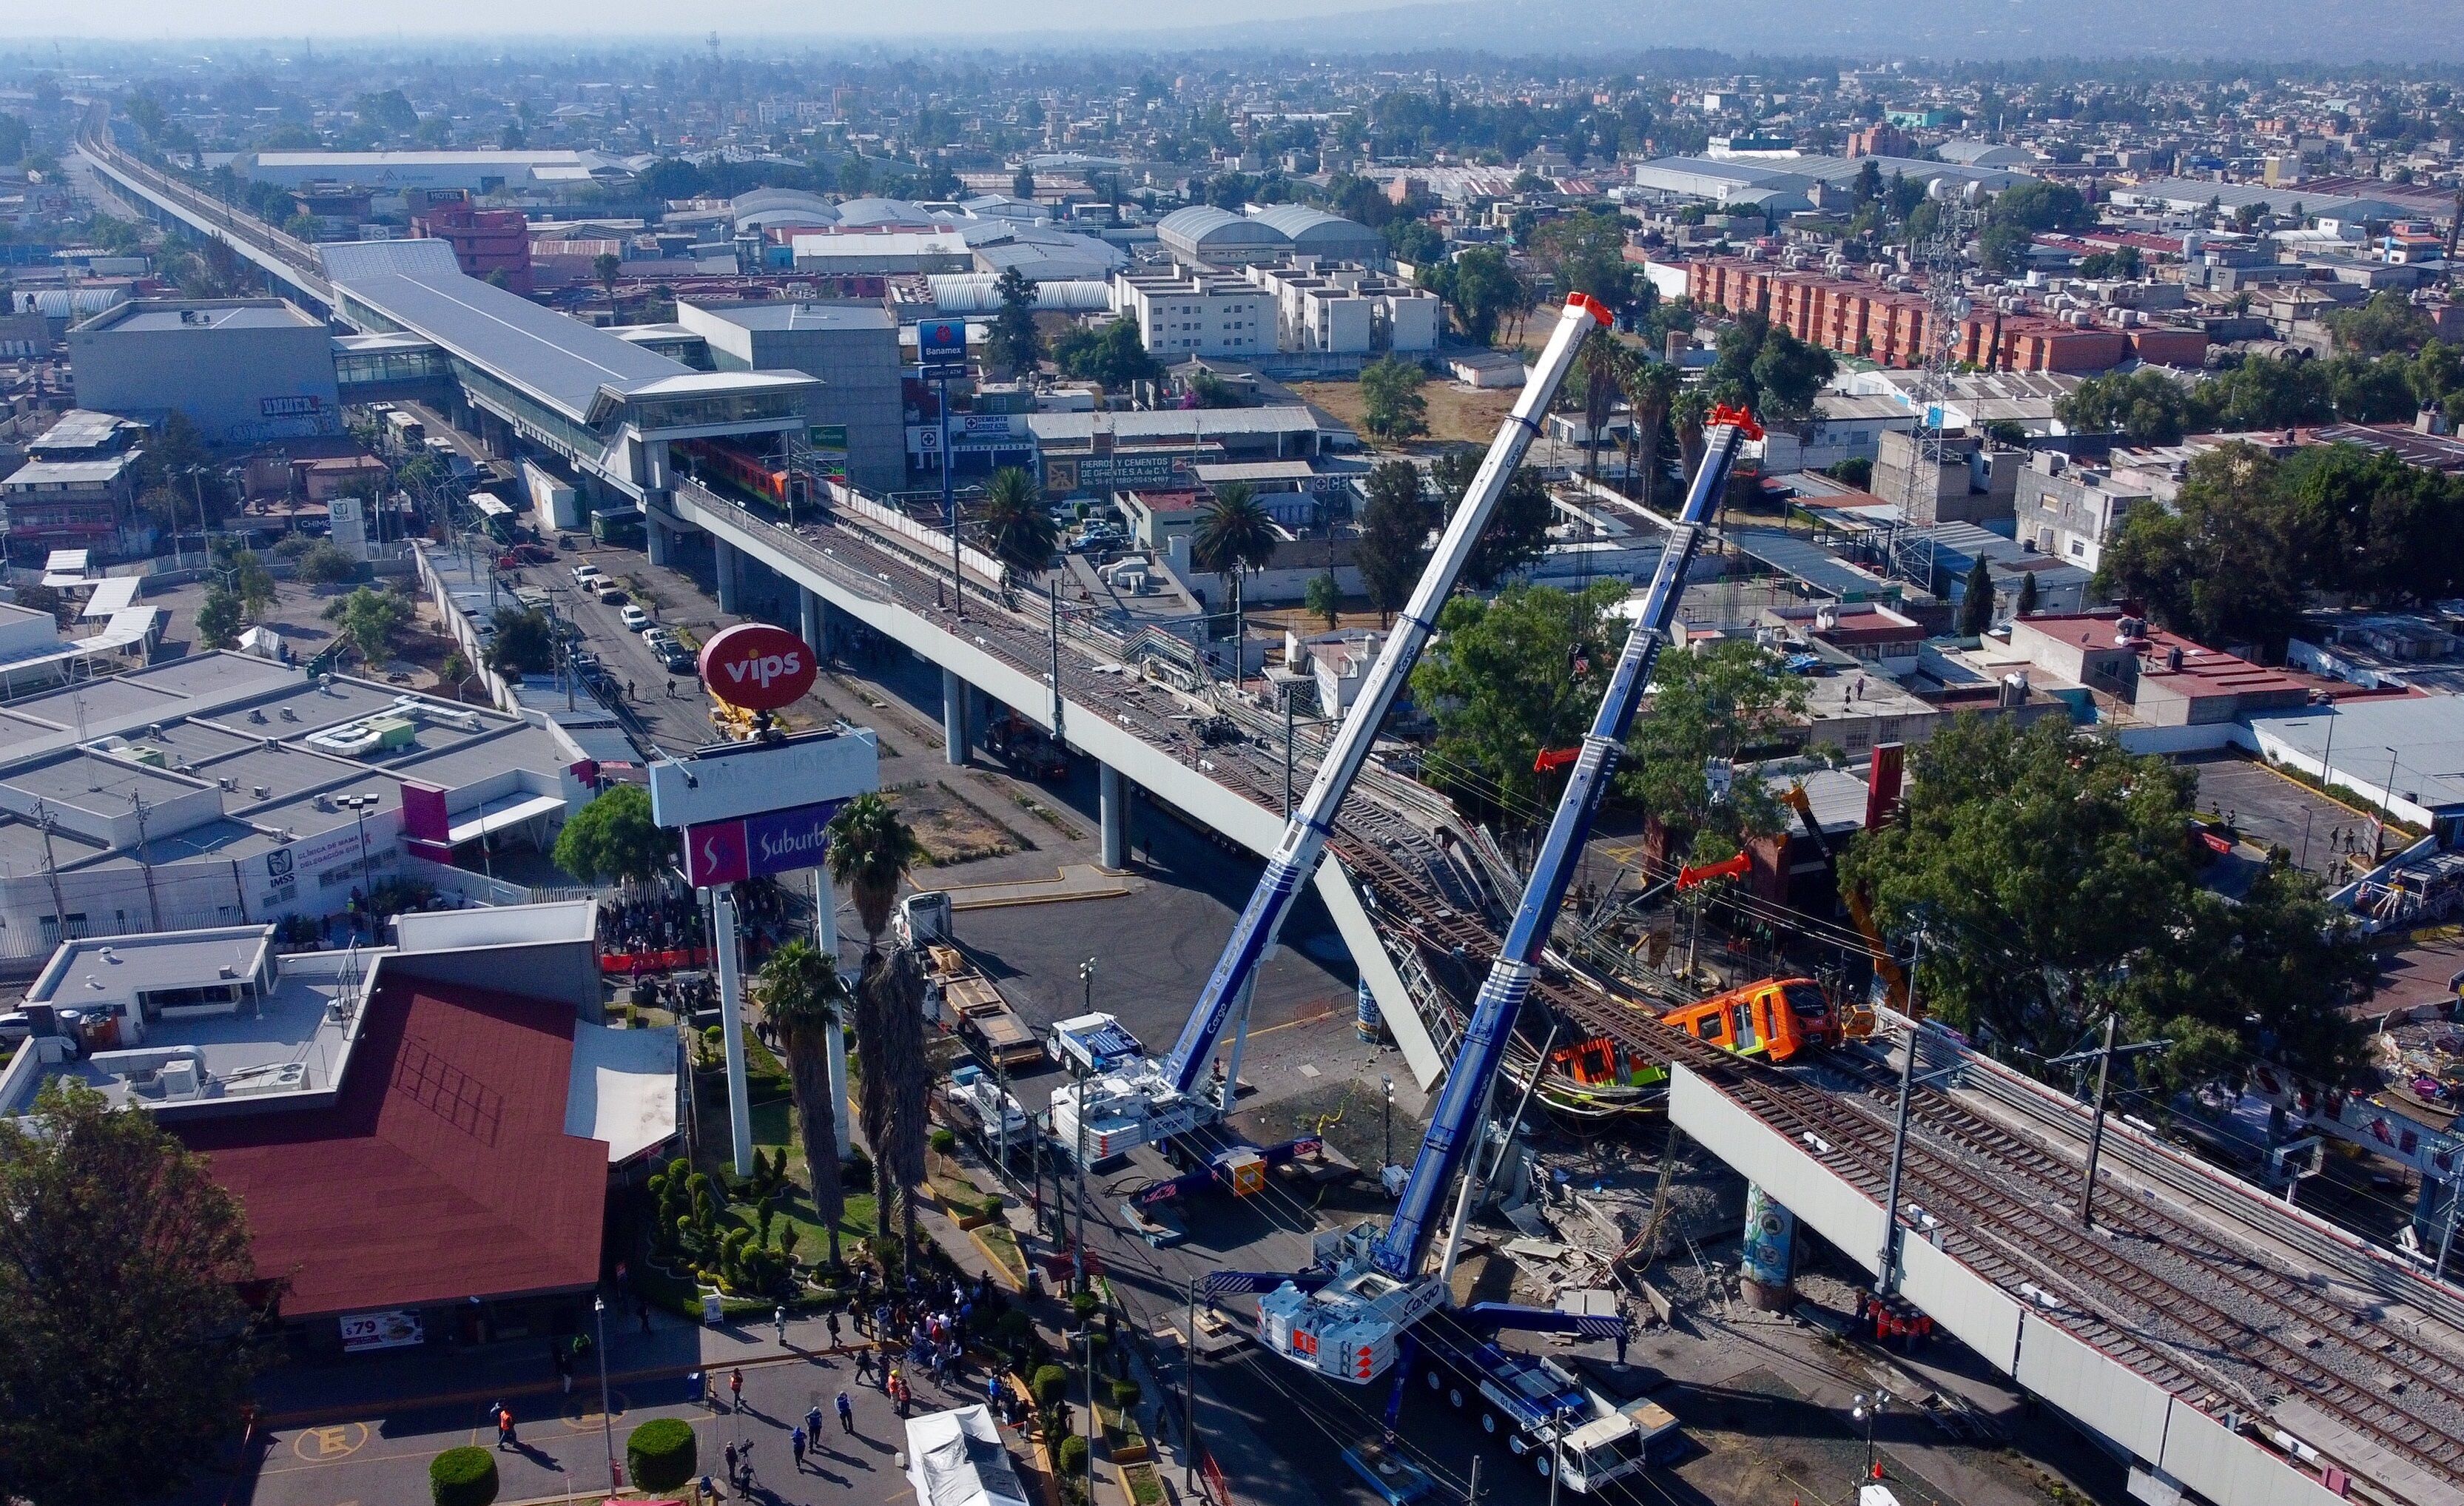 MEX860. CIUDAD DE MÉXICO (MÉXICO), 04/05/2021.- Vista aérea realizada con un drone que muestra el colapso de los vagones del metro, hoy en la Ciudad de México (México). Al menos 23 personas murieron y otras 79 resultaron heridas al desplomarse en la noche de lunes un puente de la vía elevada de la línea 12 del Metro de Ciudad de México entre la estación Olivos y Tezonco sobre el que circulaba un tren con varios vagones. EFE/Carlos Ramírez
